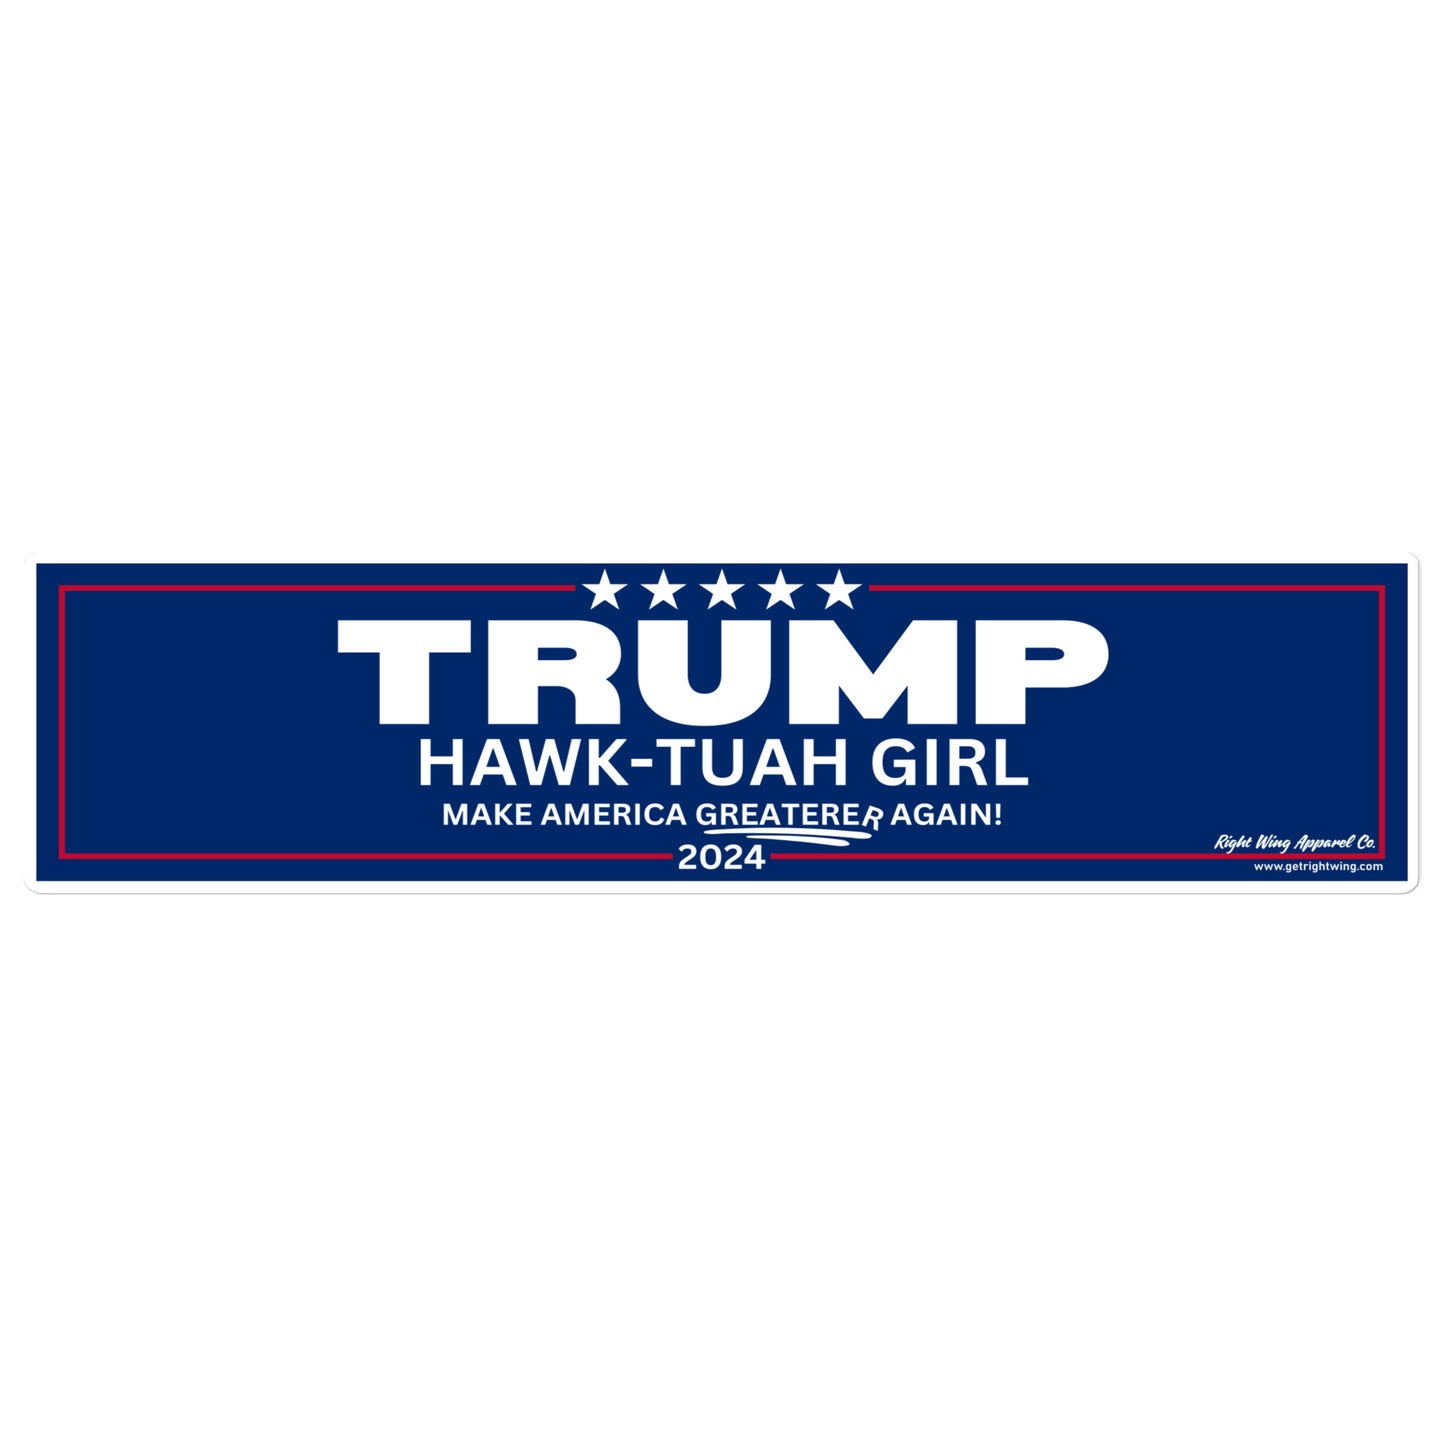 Trump Hawk-Tuah Girl "Make America Greaterer Again!" Campaign Bumper Sticker